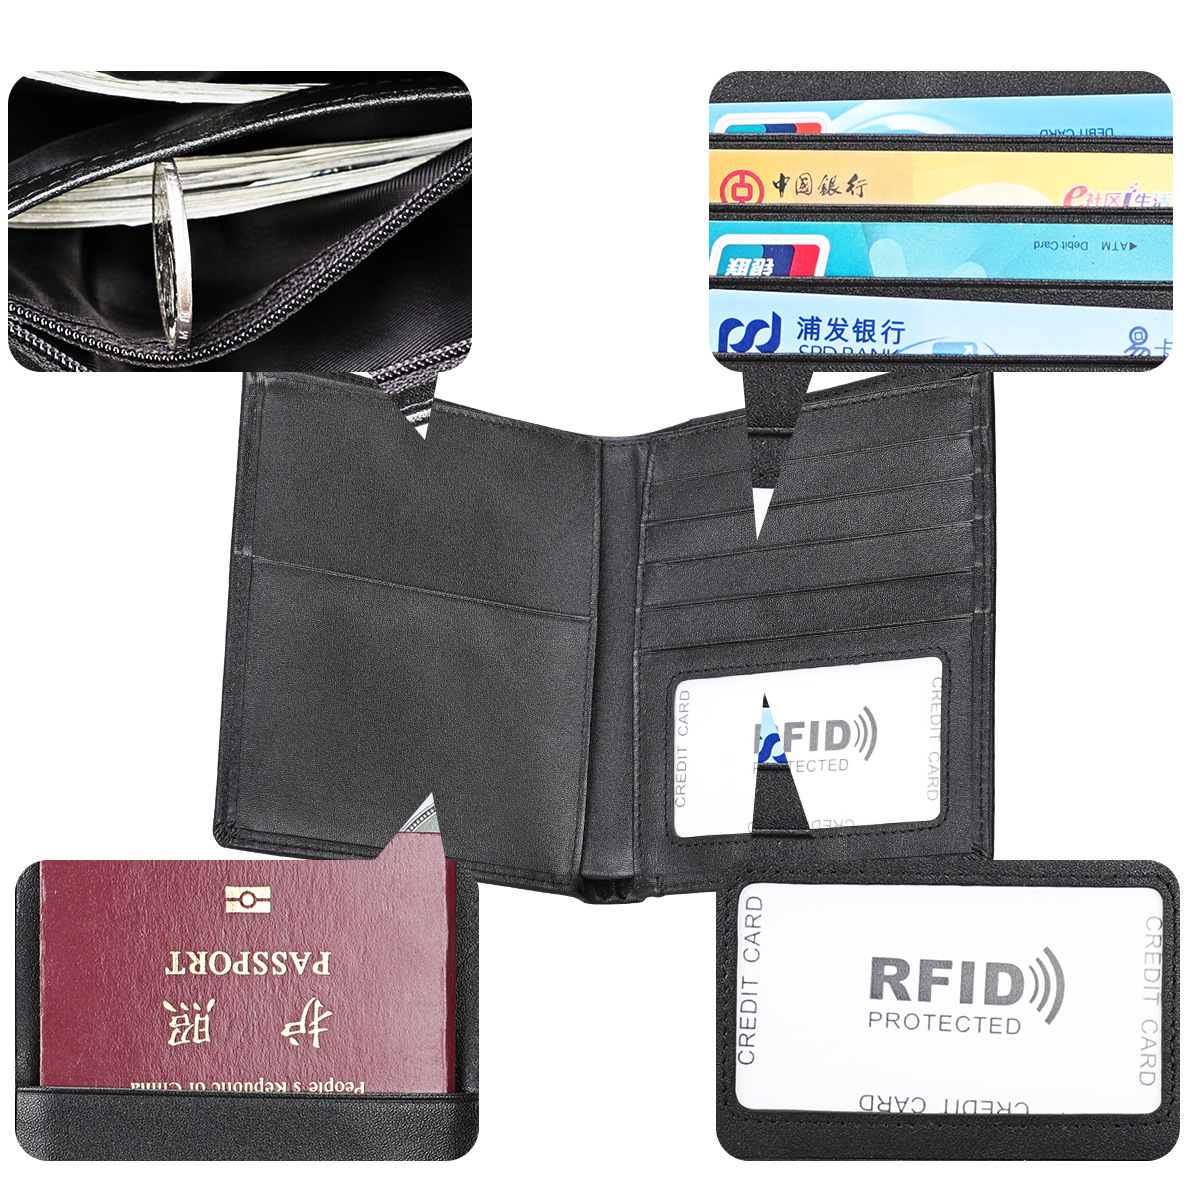 تبيع الشركات المصنعة بالجملة  Rfid للرجال والنساء مشبك جواز السفر للجلد متعدد الوظائف مجموعة بطاقات الاعتماد بالجملة display picture 27